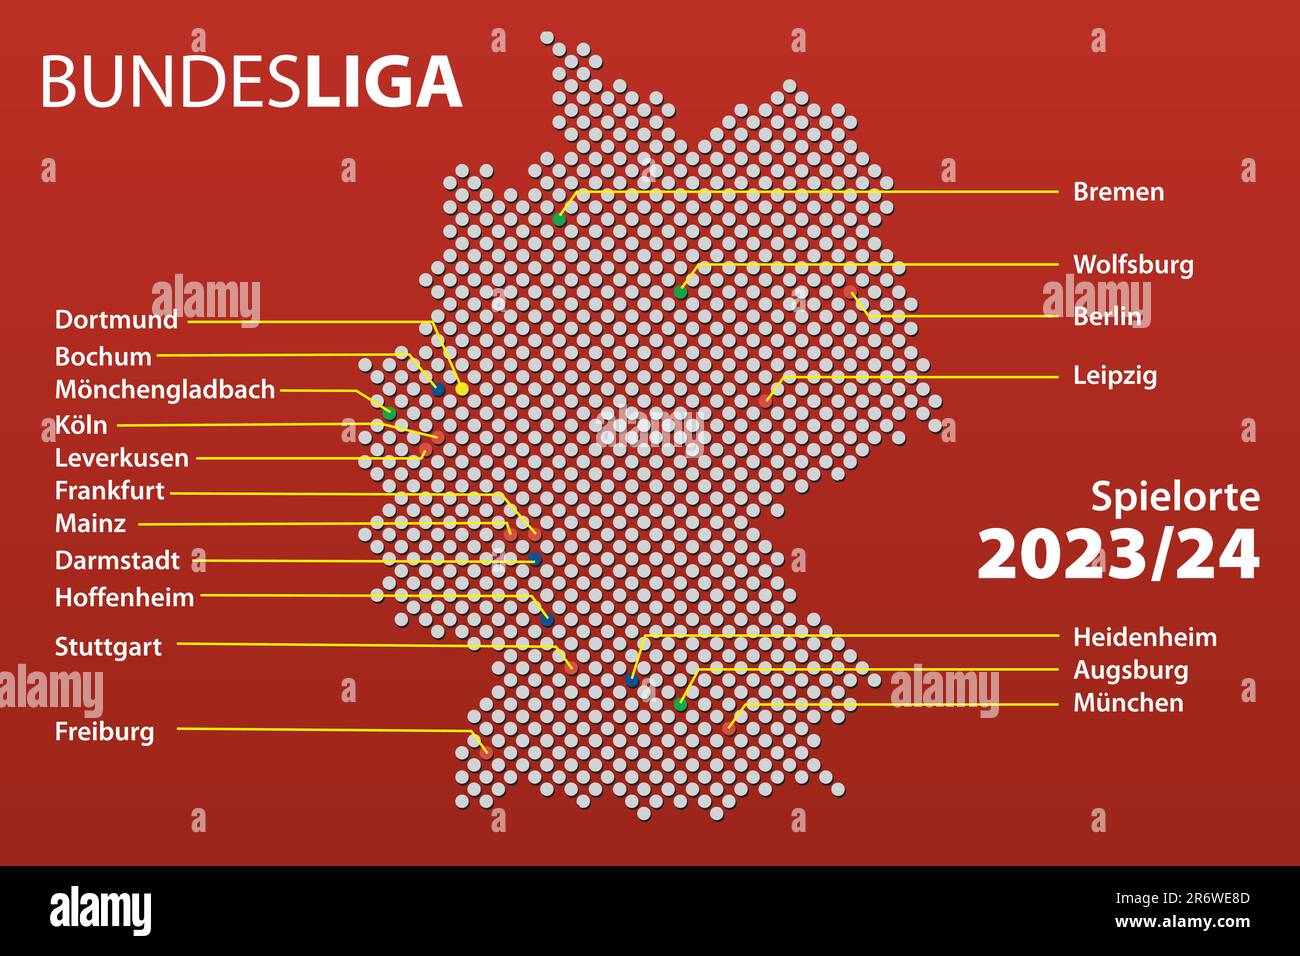 Carte des villes d'Allemagne avec les équipes la première ligue de football allemand, la Bundesliga dans la saison 2023/24 avec les noms de ville allemands. Illustration vectorielle Illustration de Vecteur